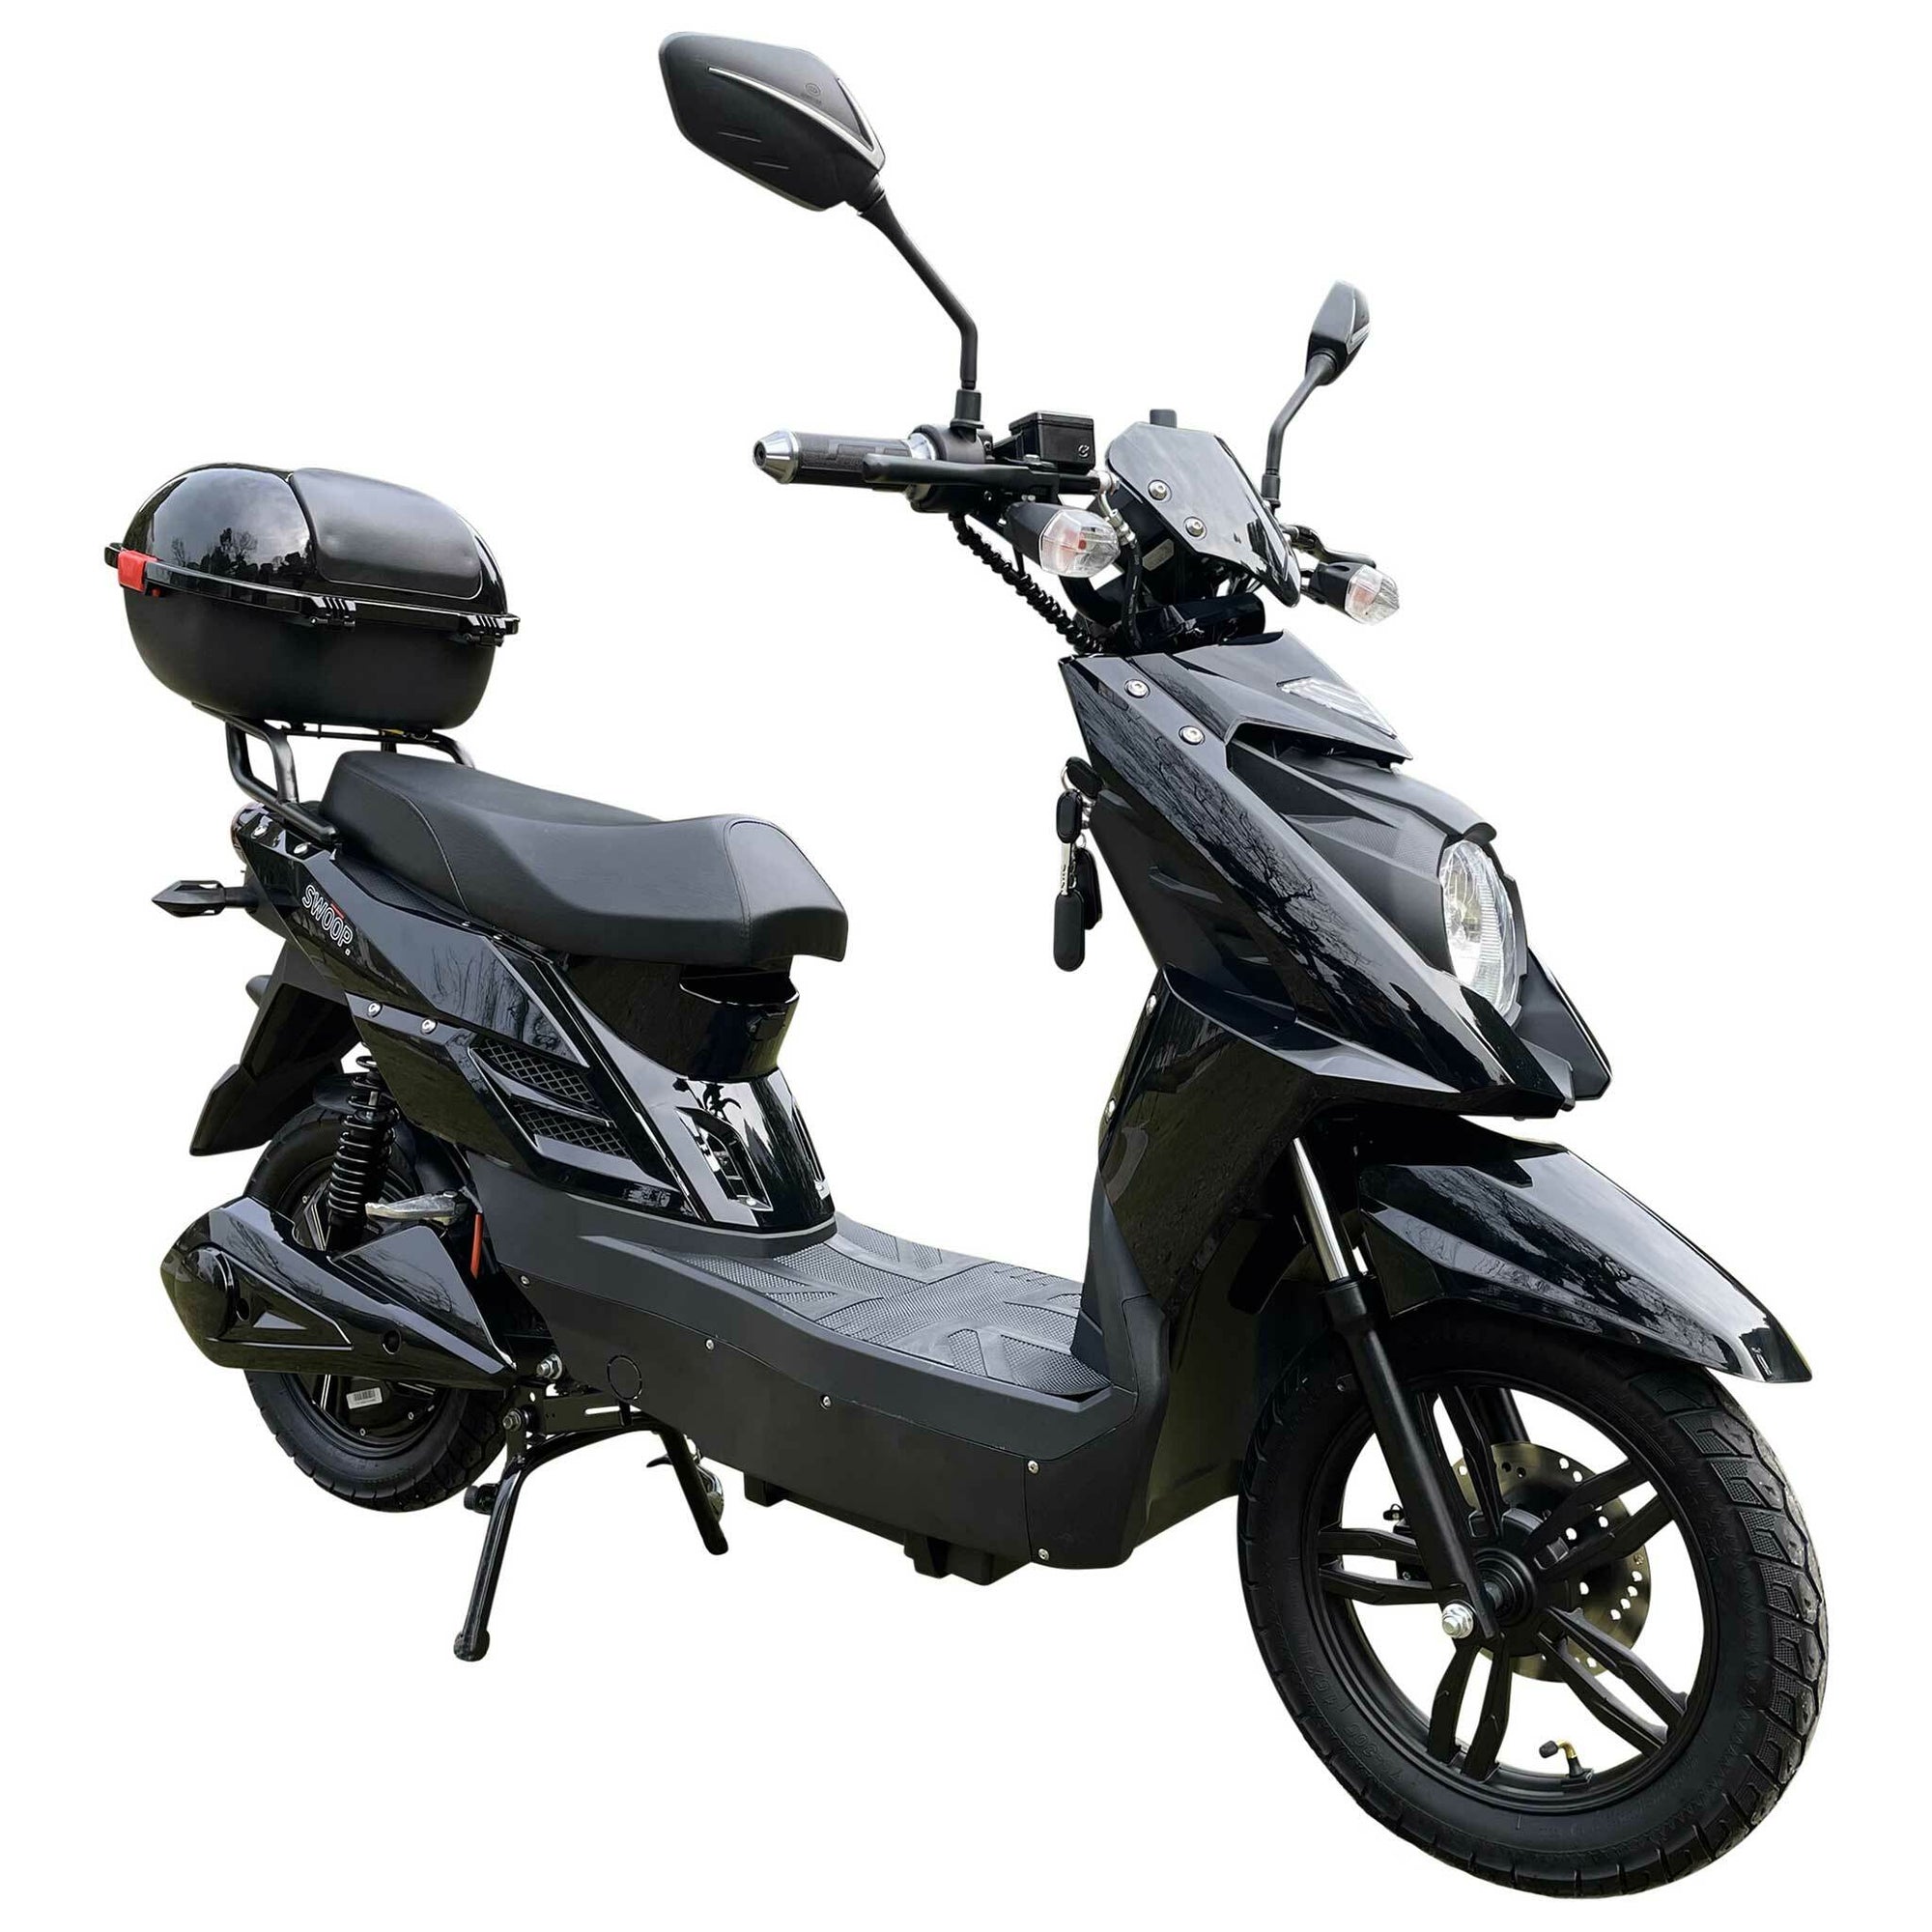 Swoop Elektrische Scooter Elegante Zwart 1000W